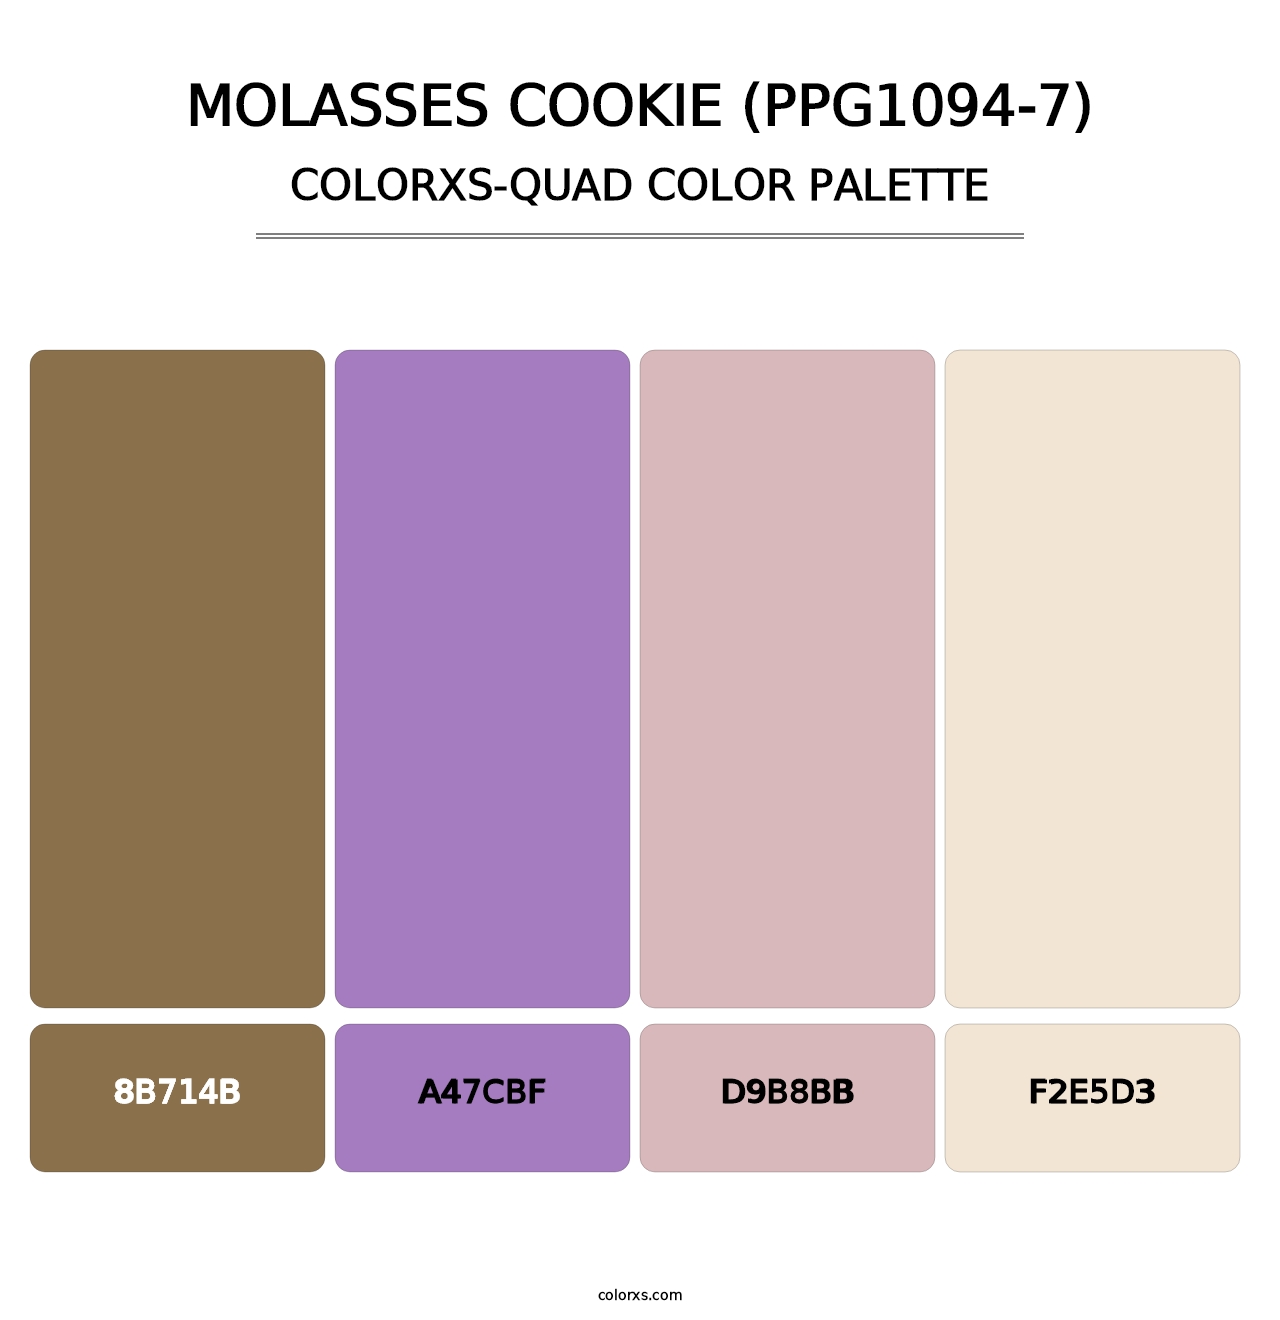 Molasses Cookie (PPG1094-7) - Colorxs Quad Palette